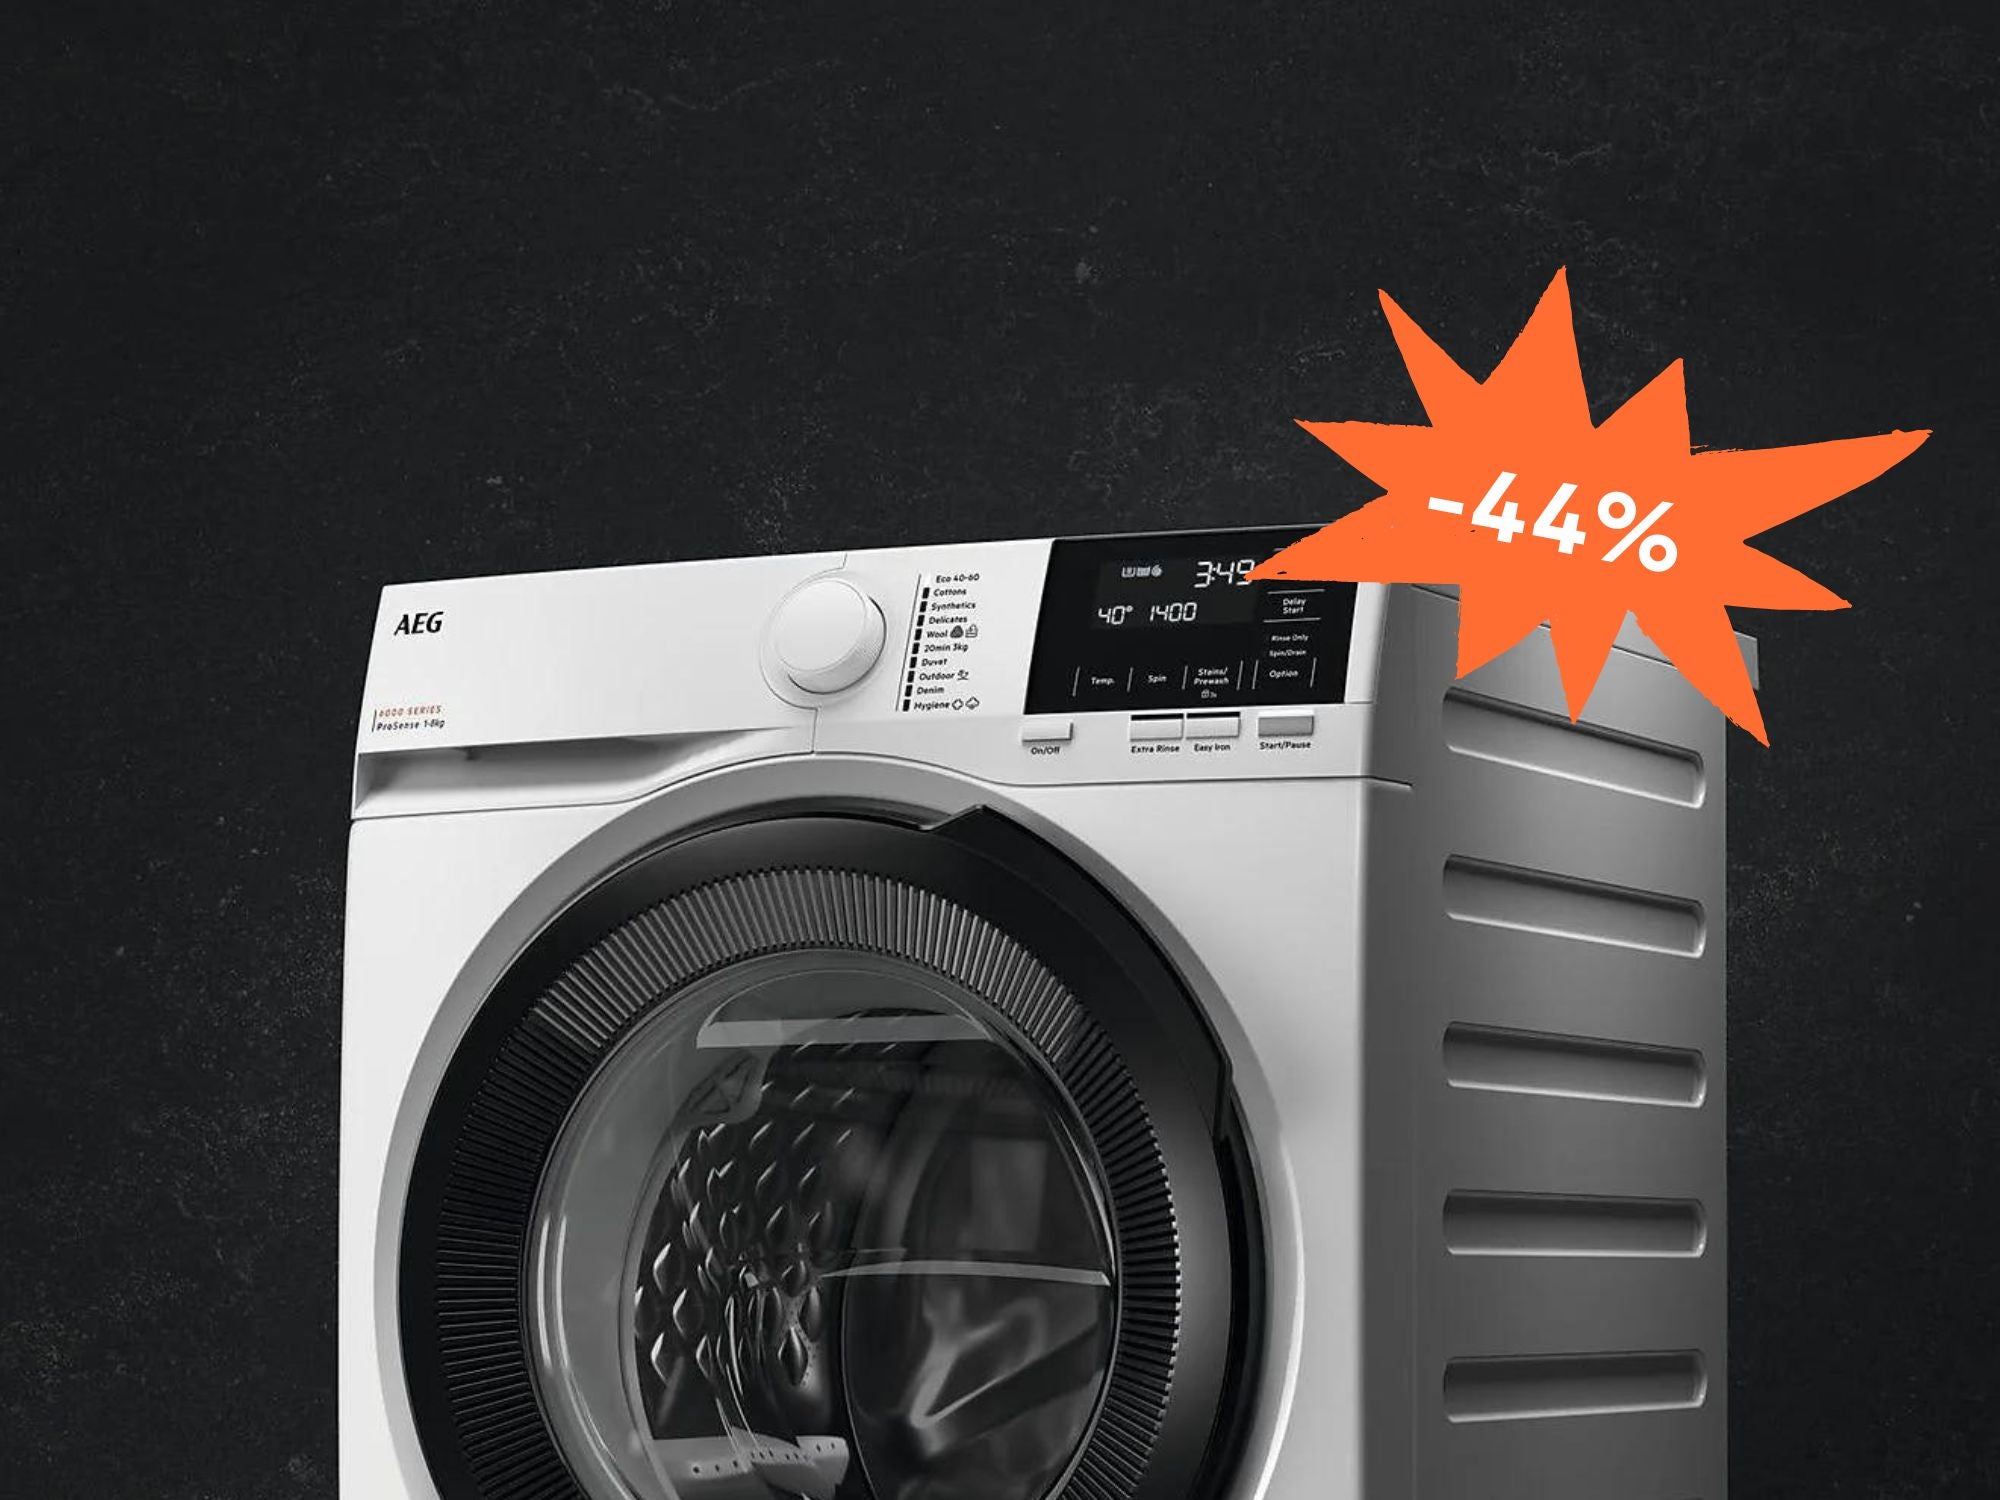 #Saturn schmeißt AEG raus: Diese Waschmaschine gibt’s jetzt satte 400 Euro günstiger